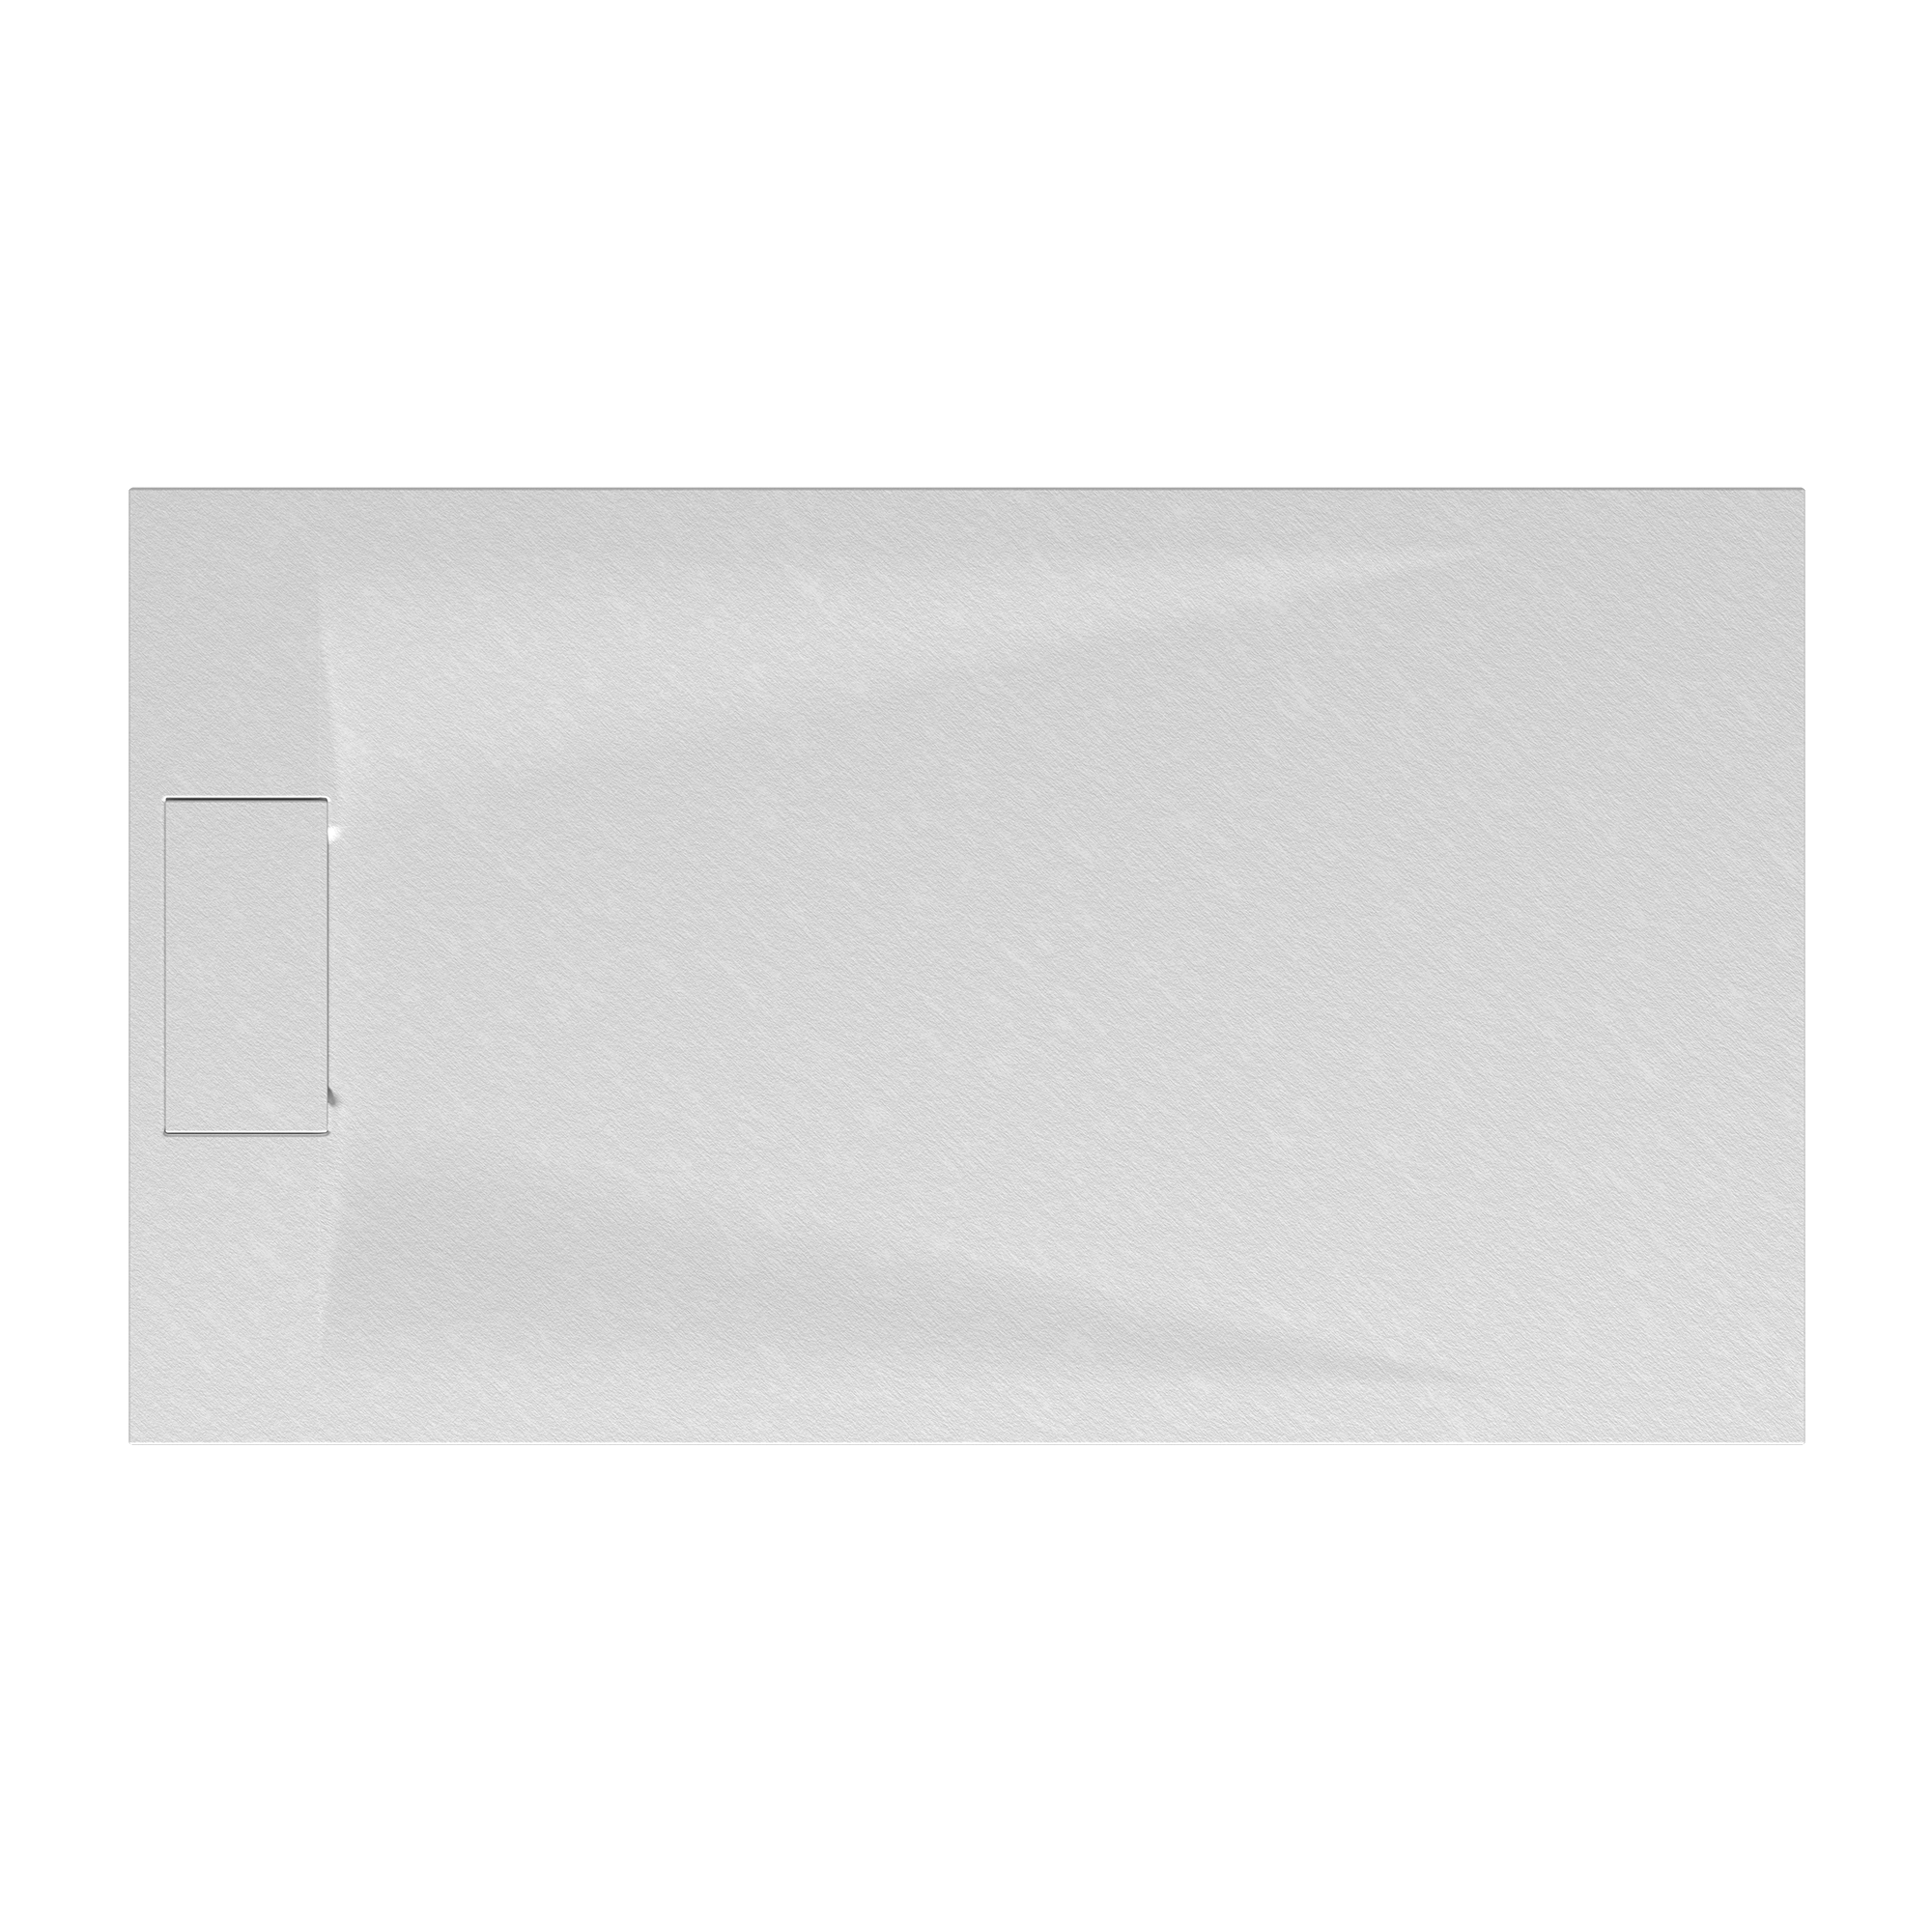 Duschwanne 'Lite Line' Steinoptik weiß 80 x 120 cm + product picture